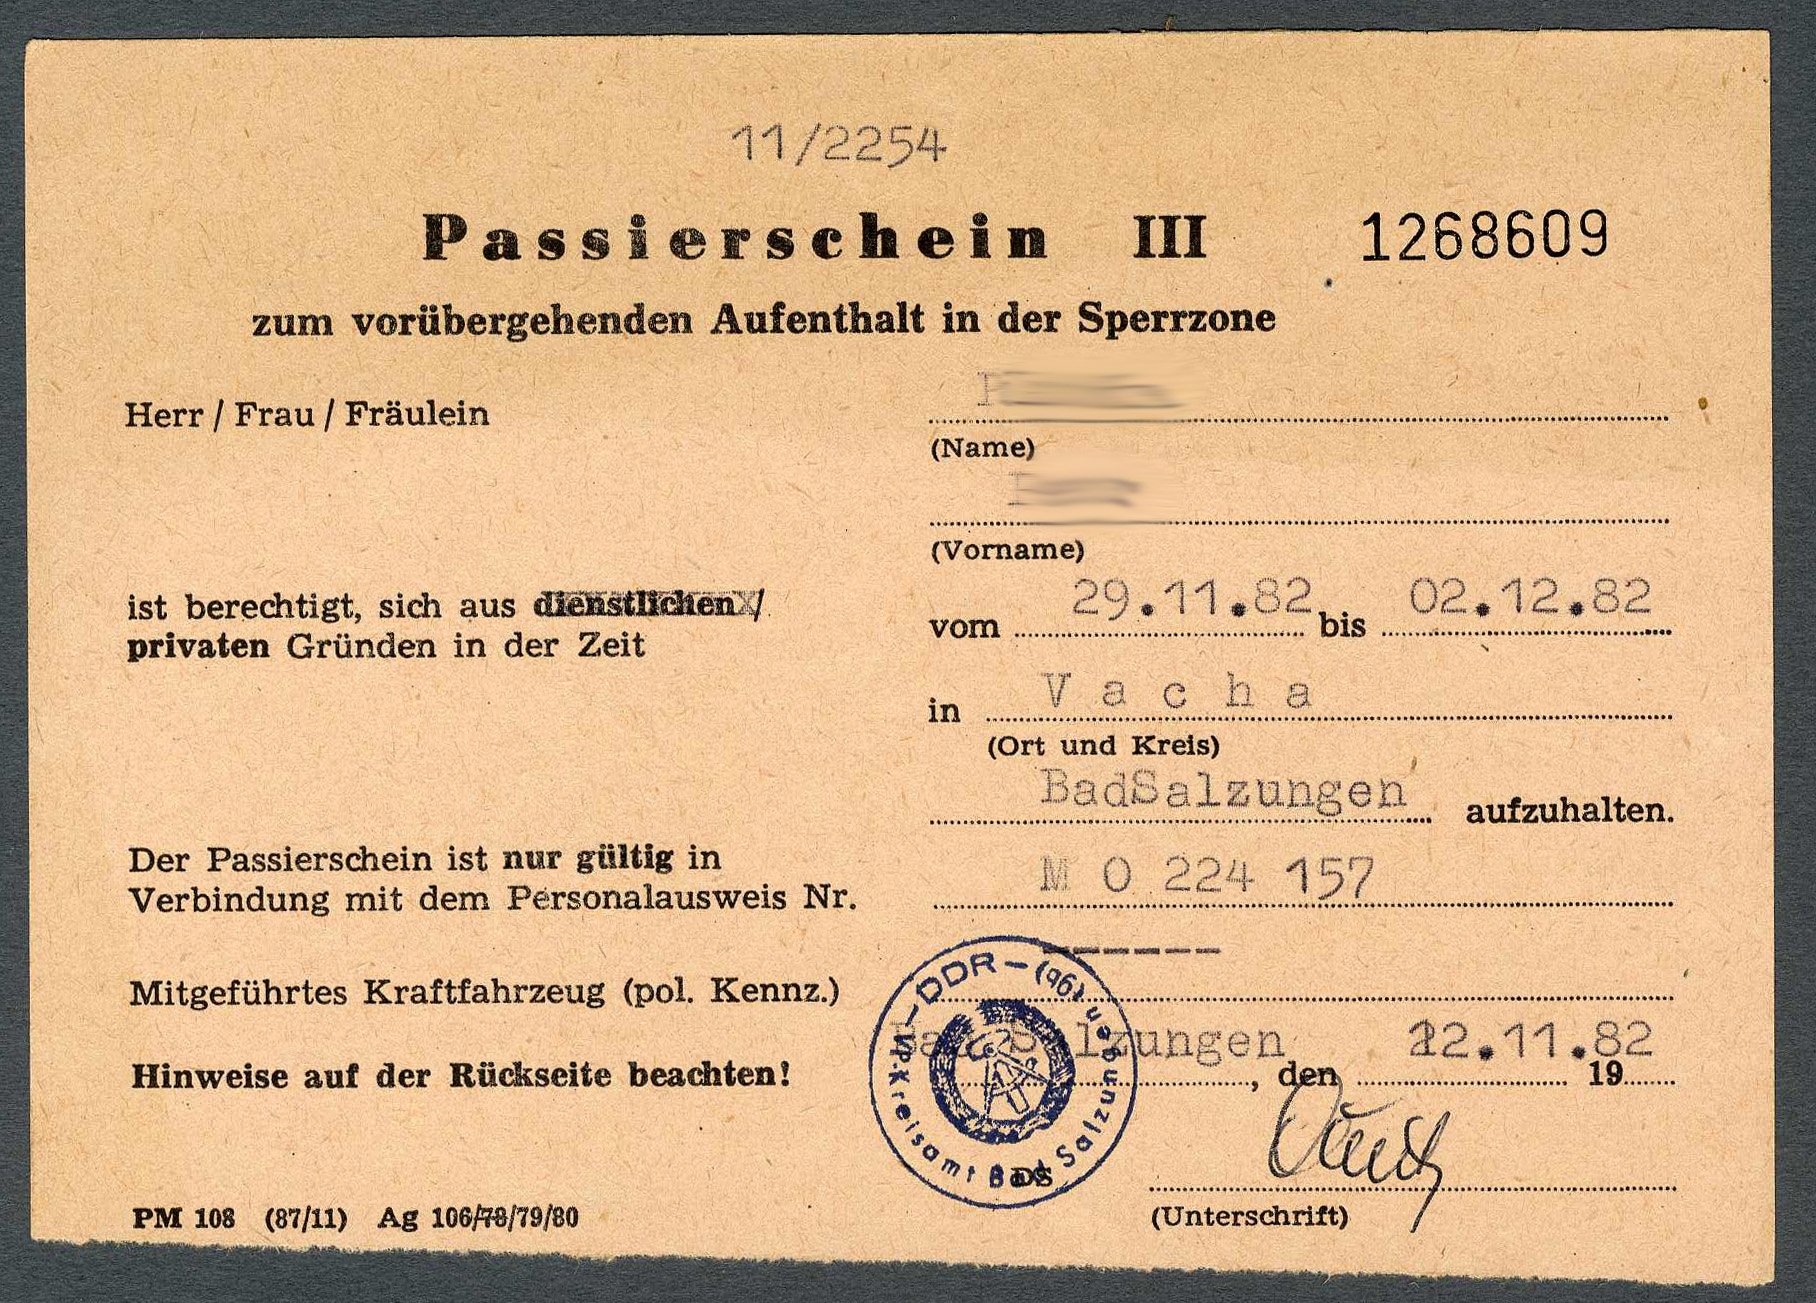 Passierschein III zum vorübergehenden Aufenthalt in der Sperrzone (Werra-Kalibergbau-Museum, Heringen/W. CC BY-NC-SA)